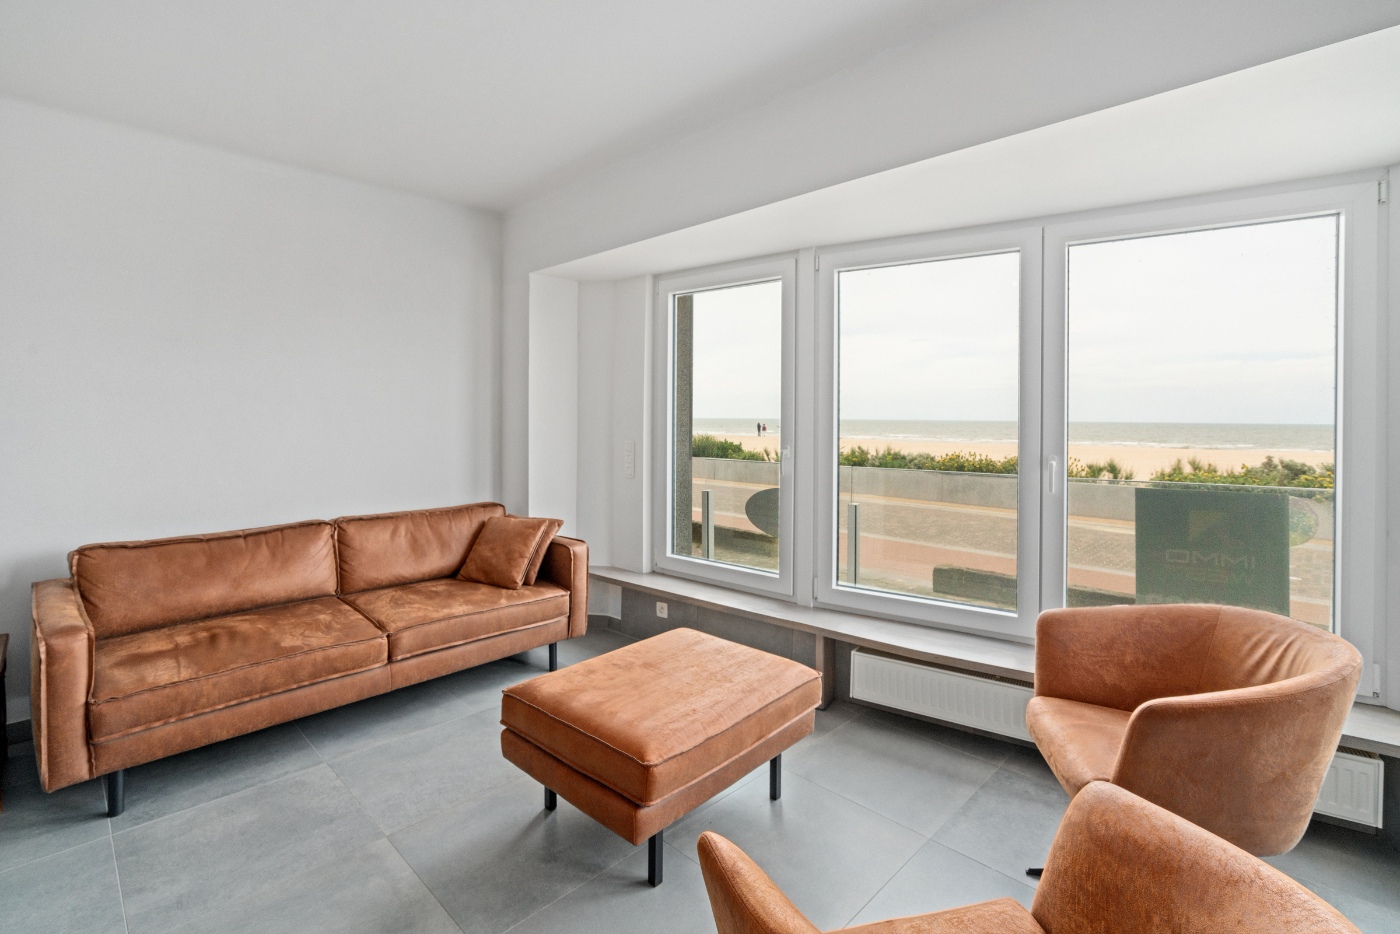 Koksijde-Zeedijk - Gelijkvloers appartement met 3 slaapkamers en frontaal zeezicht inclusief garage - Residentie Le Provence foto 3